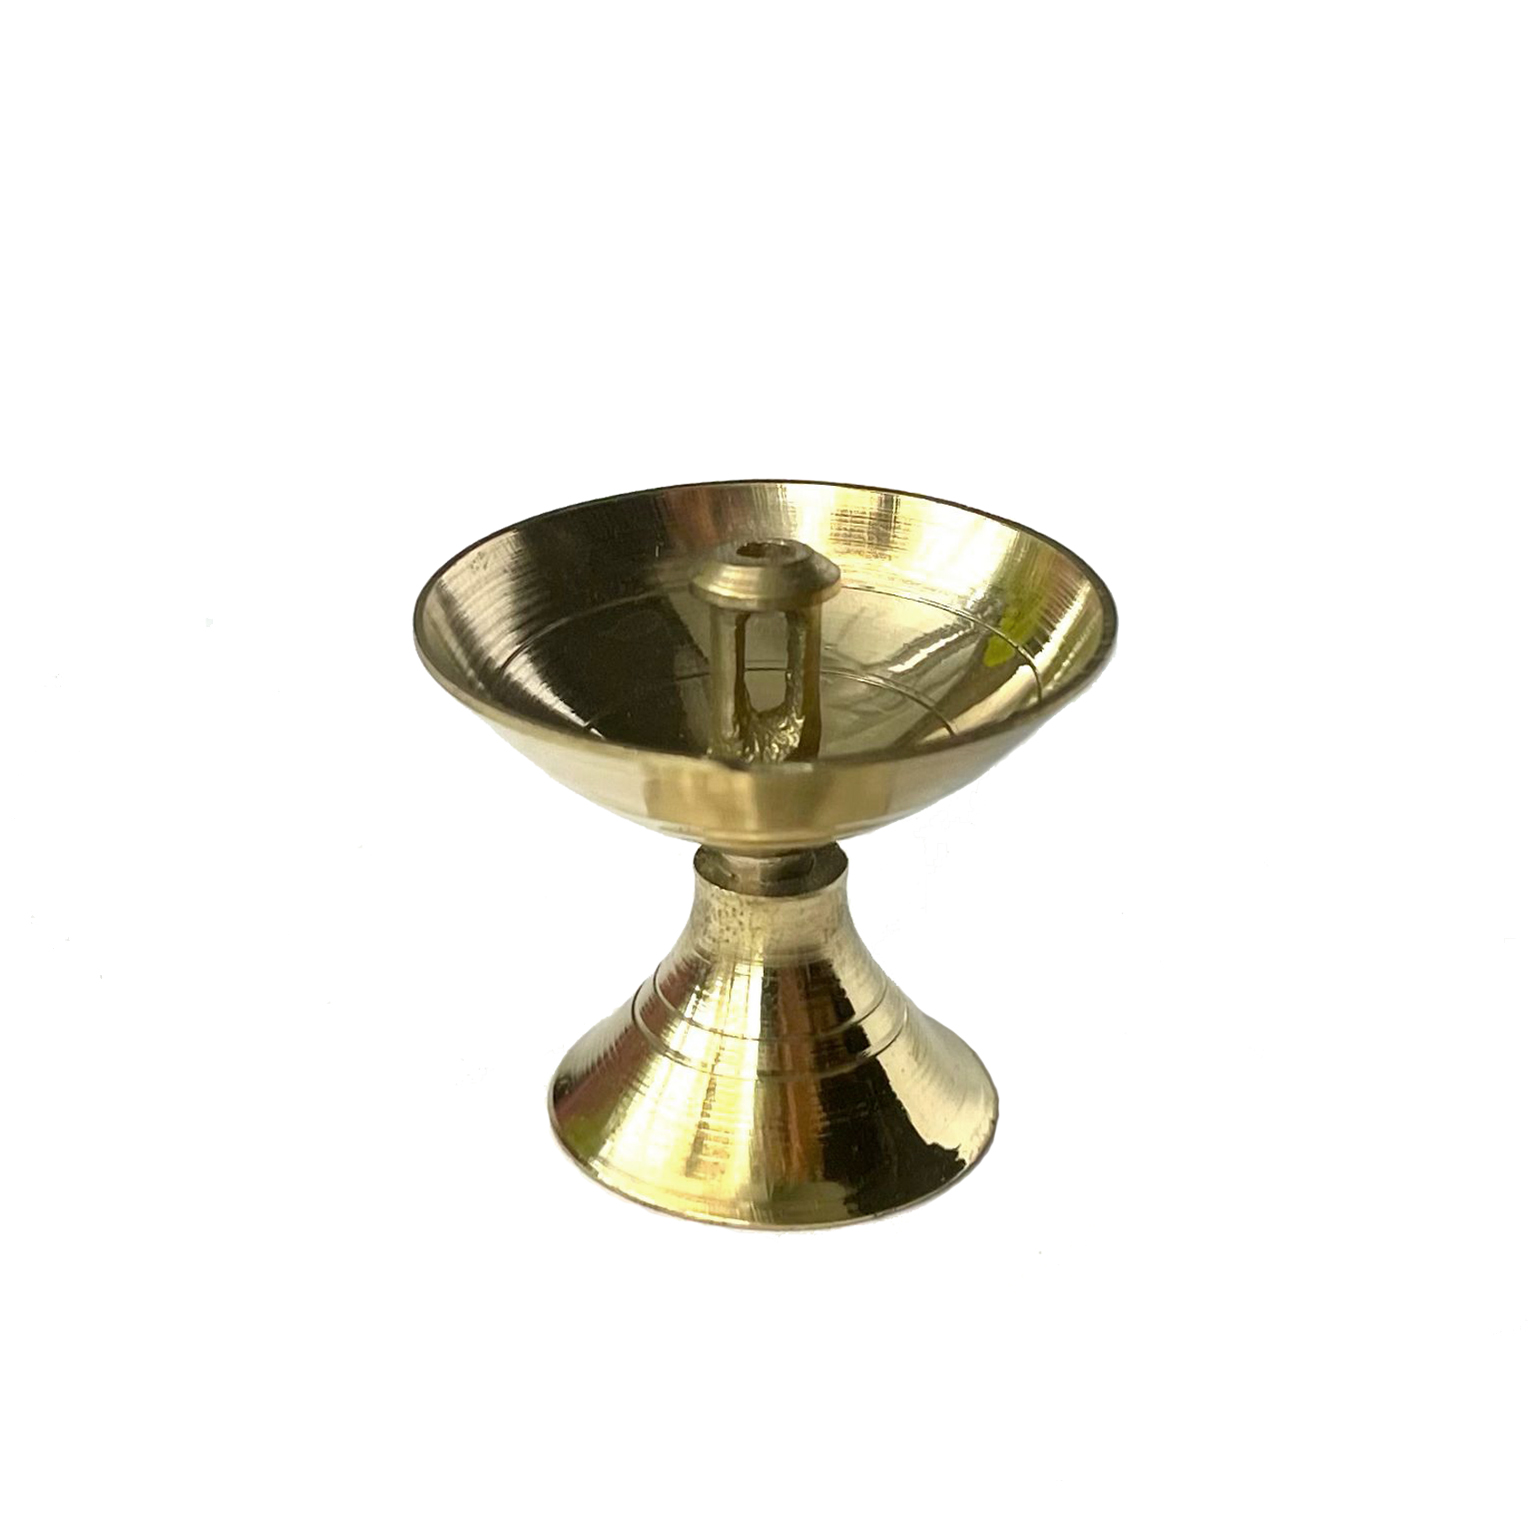 Лампадка МАЛАЯ (латунь, диаметр 4 см., высота 3,2 см.), 1 шт.